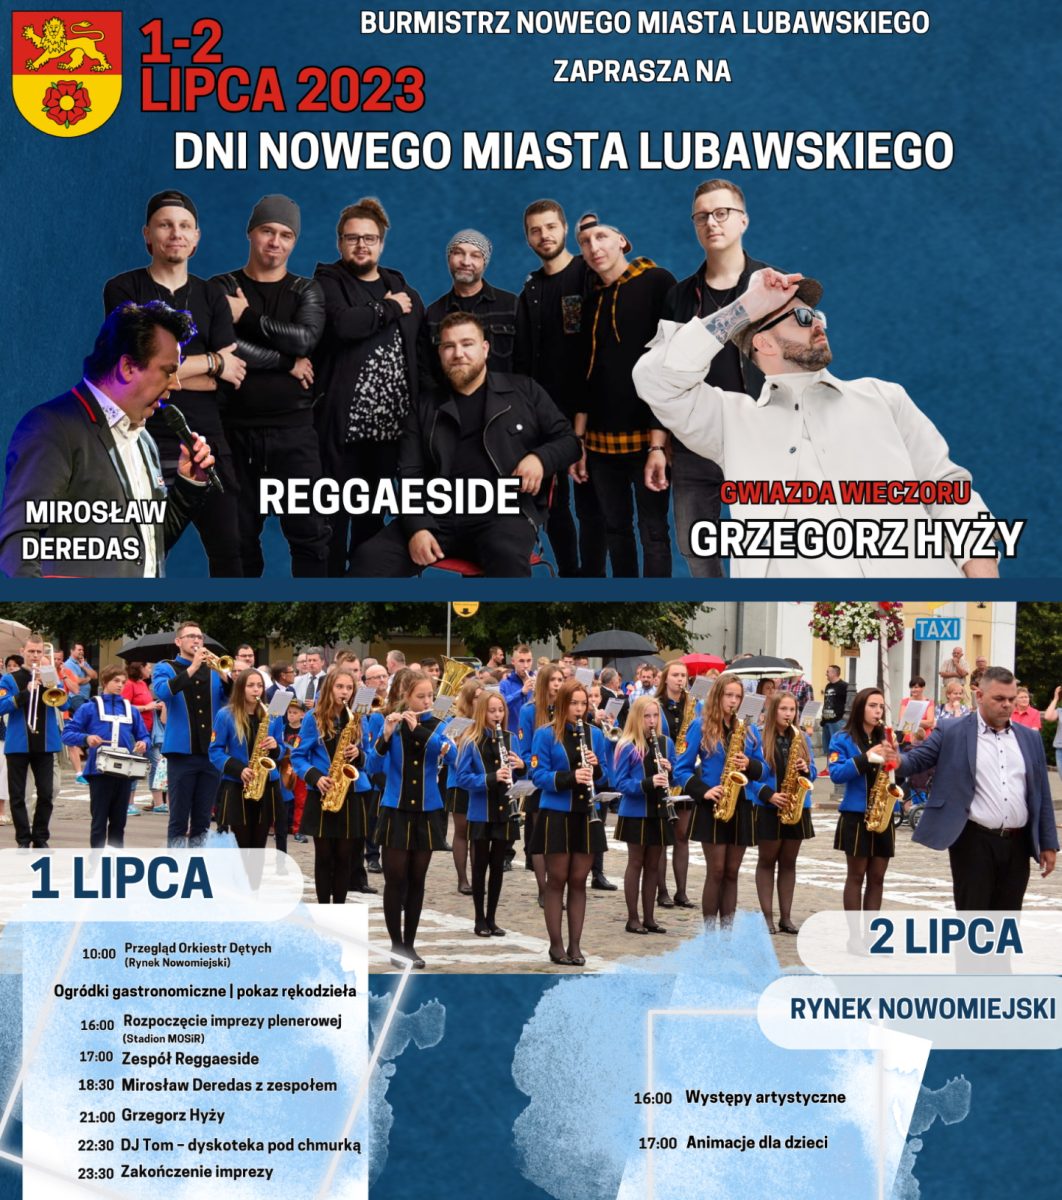 Plakat zapraszający w dniach 1-2 lipca 2023 r. do Nowego Miasta Lubawskiego na cykliczną imprezę Dni Nowego Miasta Lubawskiego 2023.